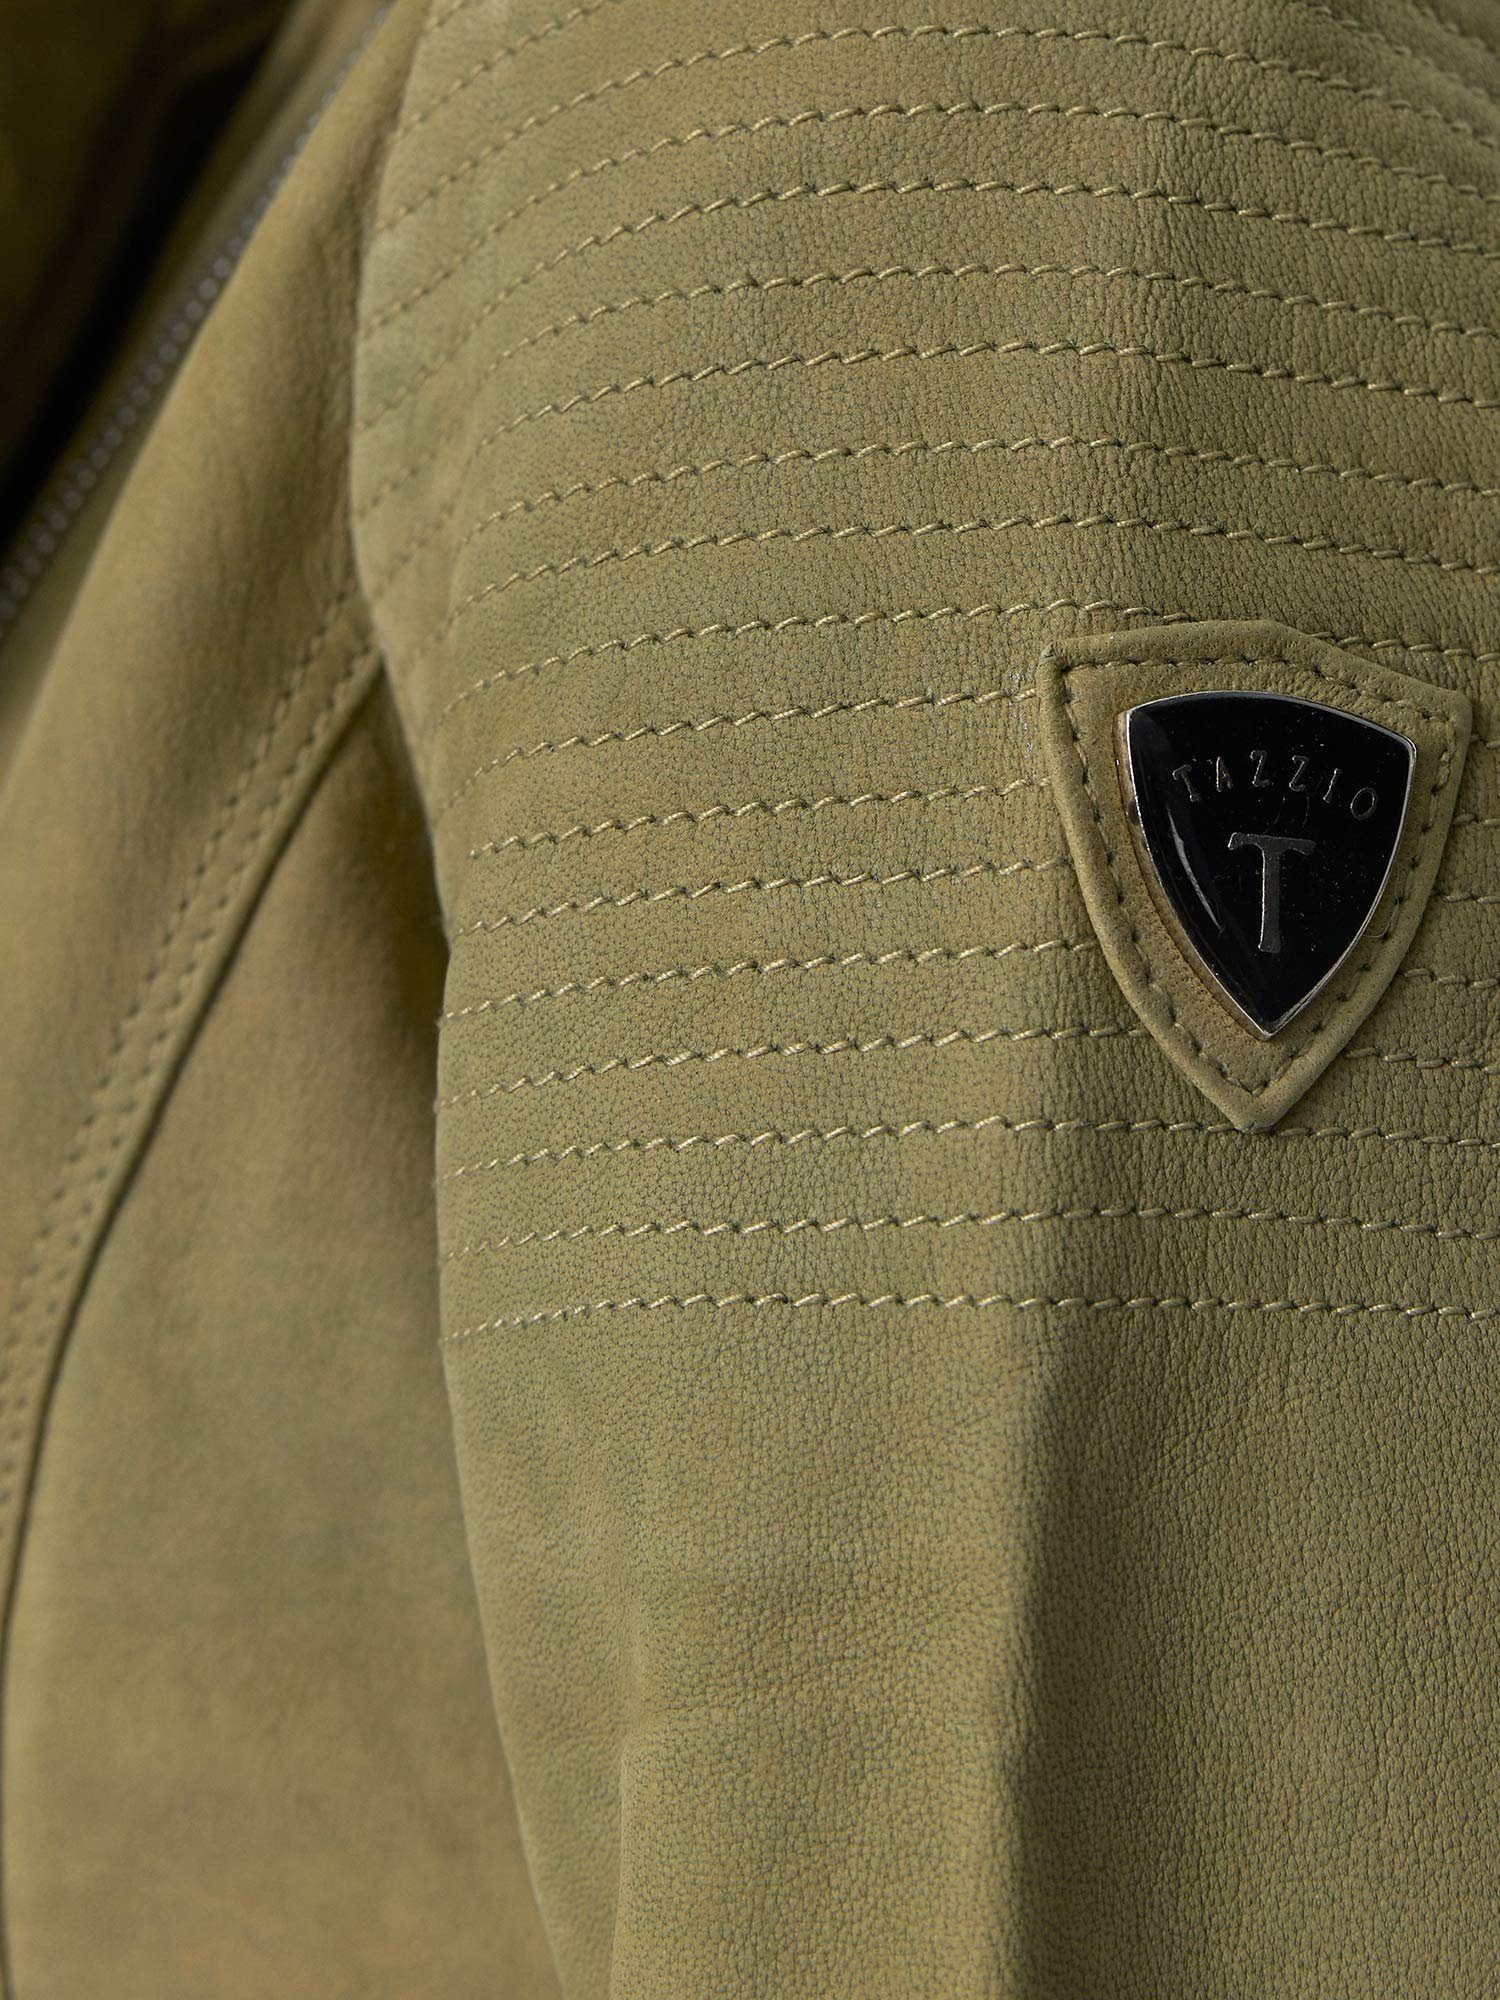 grün F500 Zipper-Details im Jacke Damen Tazzio Lederjacke & Biker Reverskragen Leder mit Look